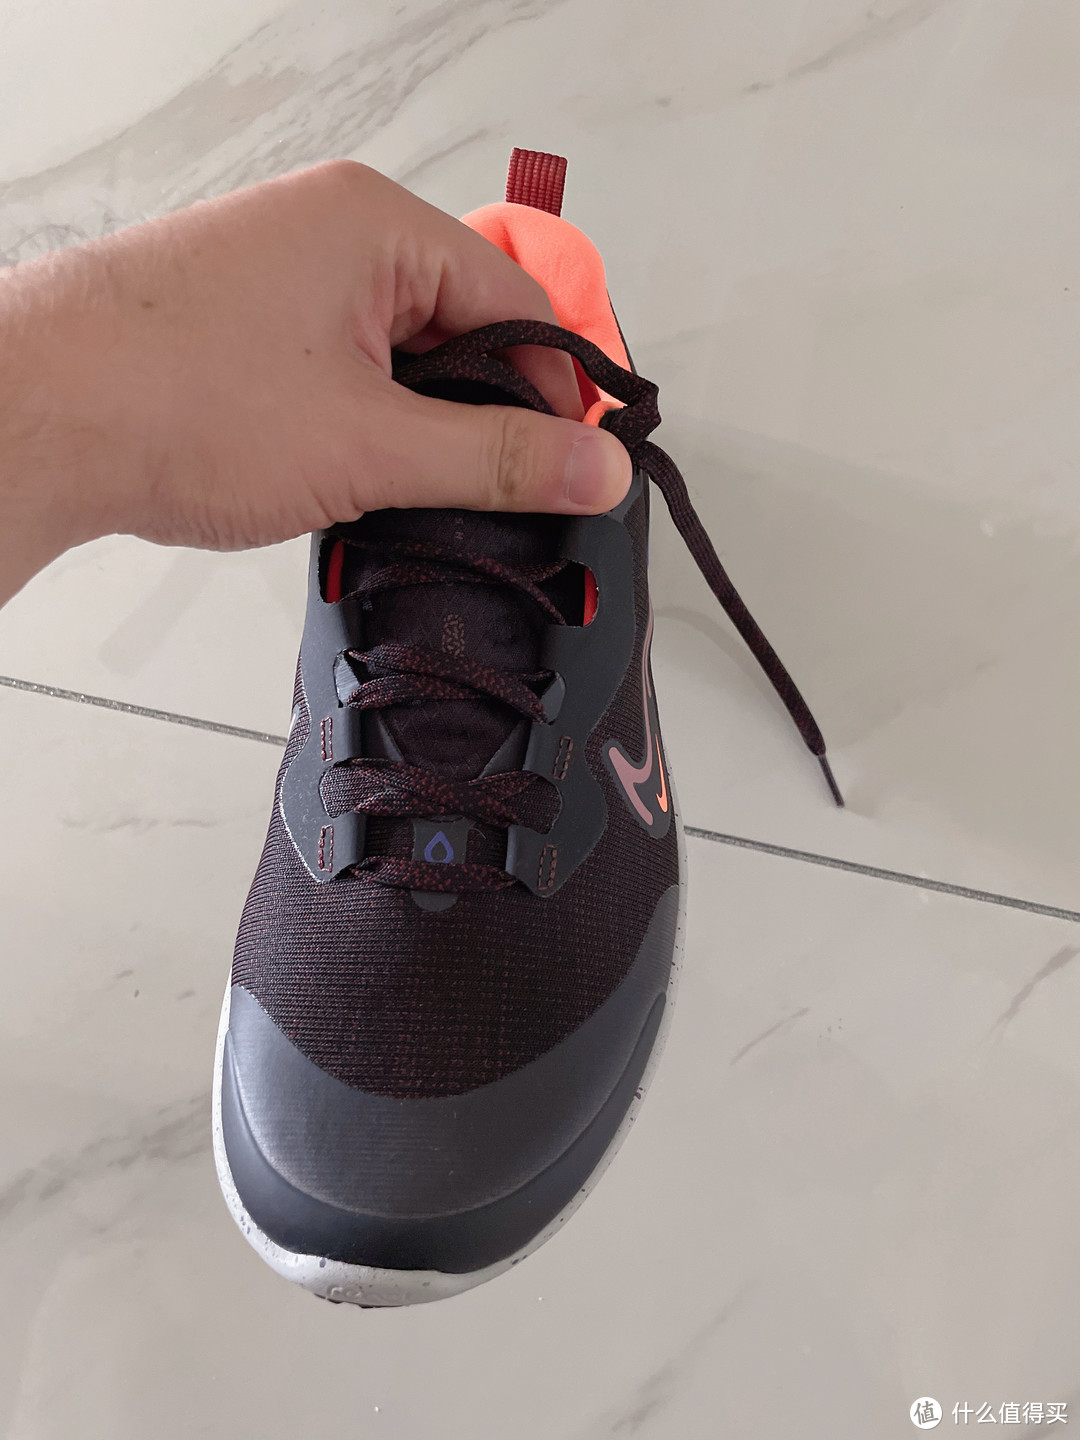 夏季运动新装备—408元好价入手的耐克REACT MILER 2 SHIELD跑鞋实测体验